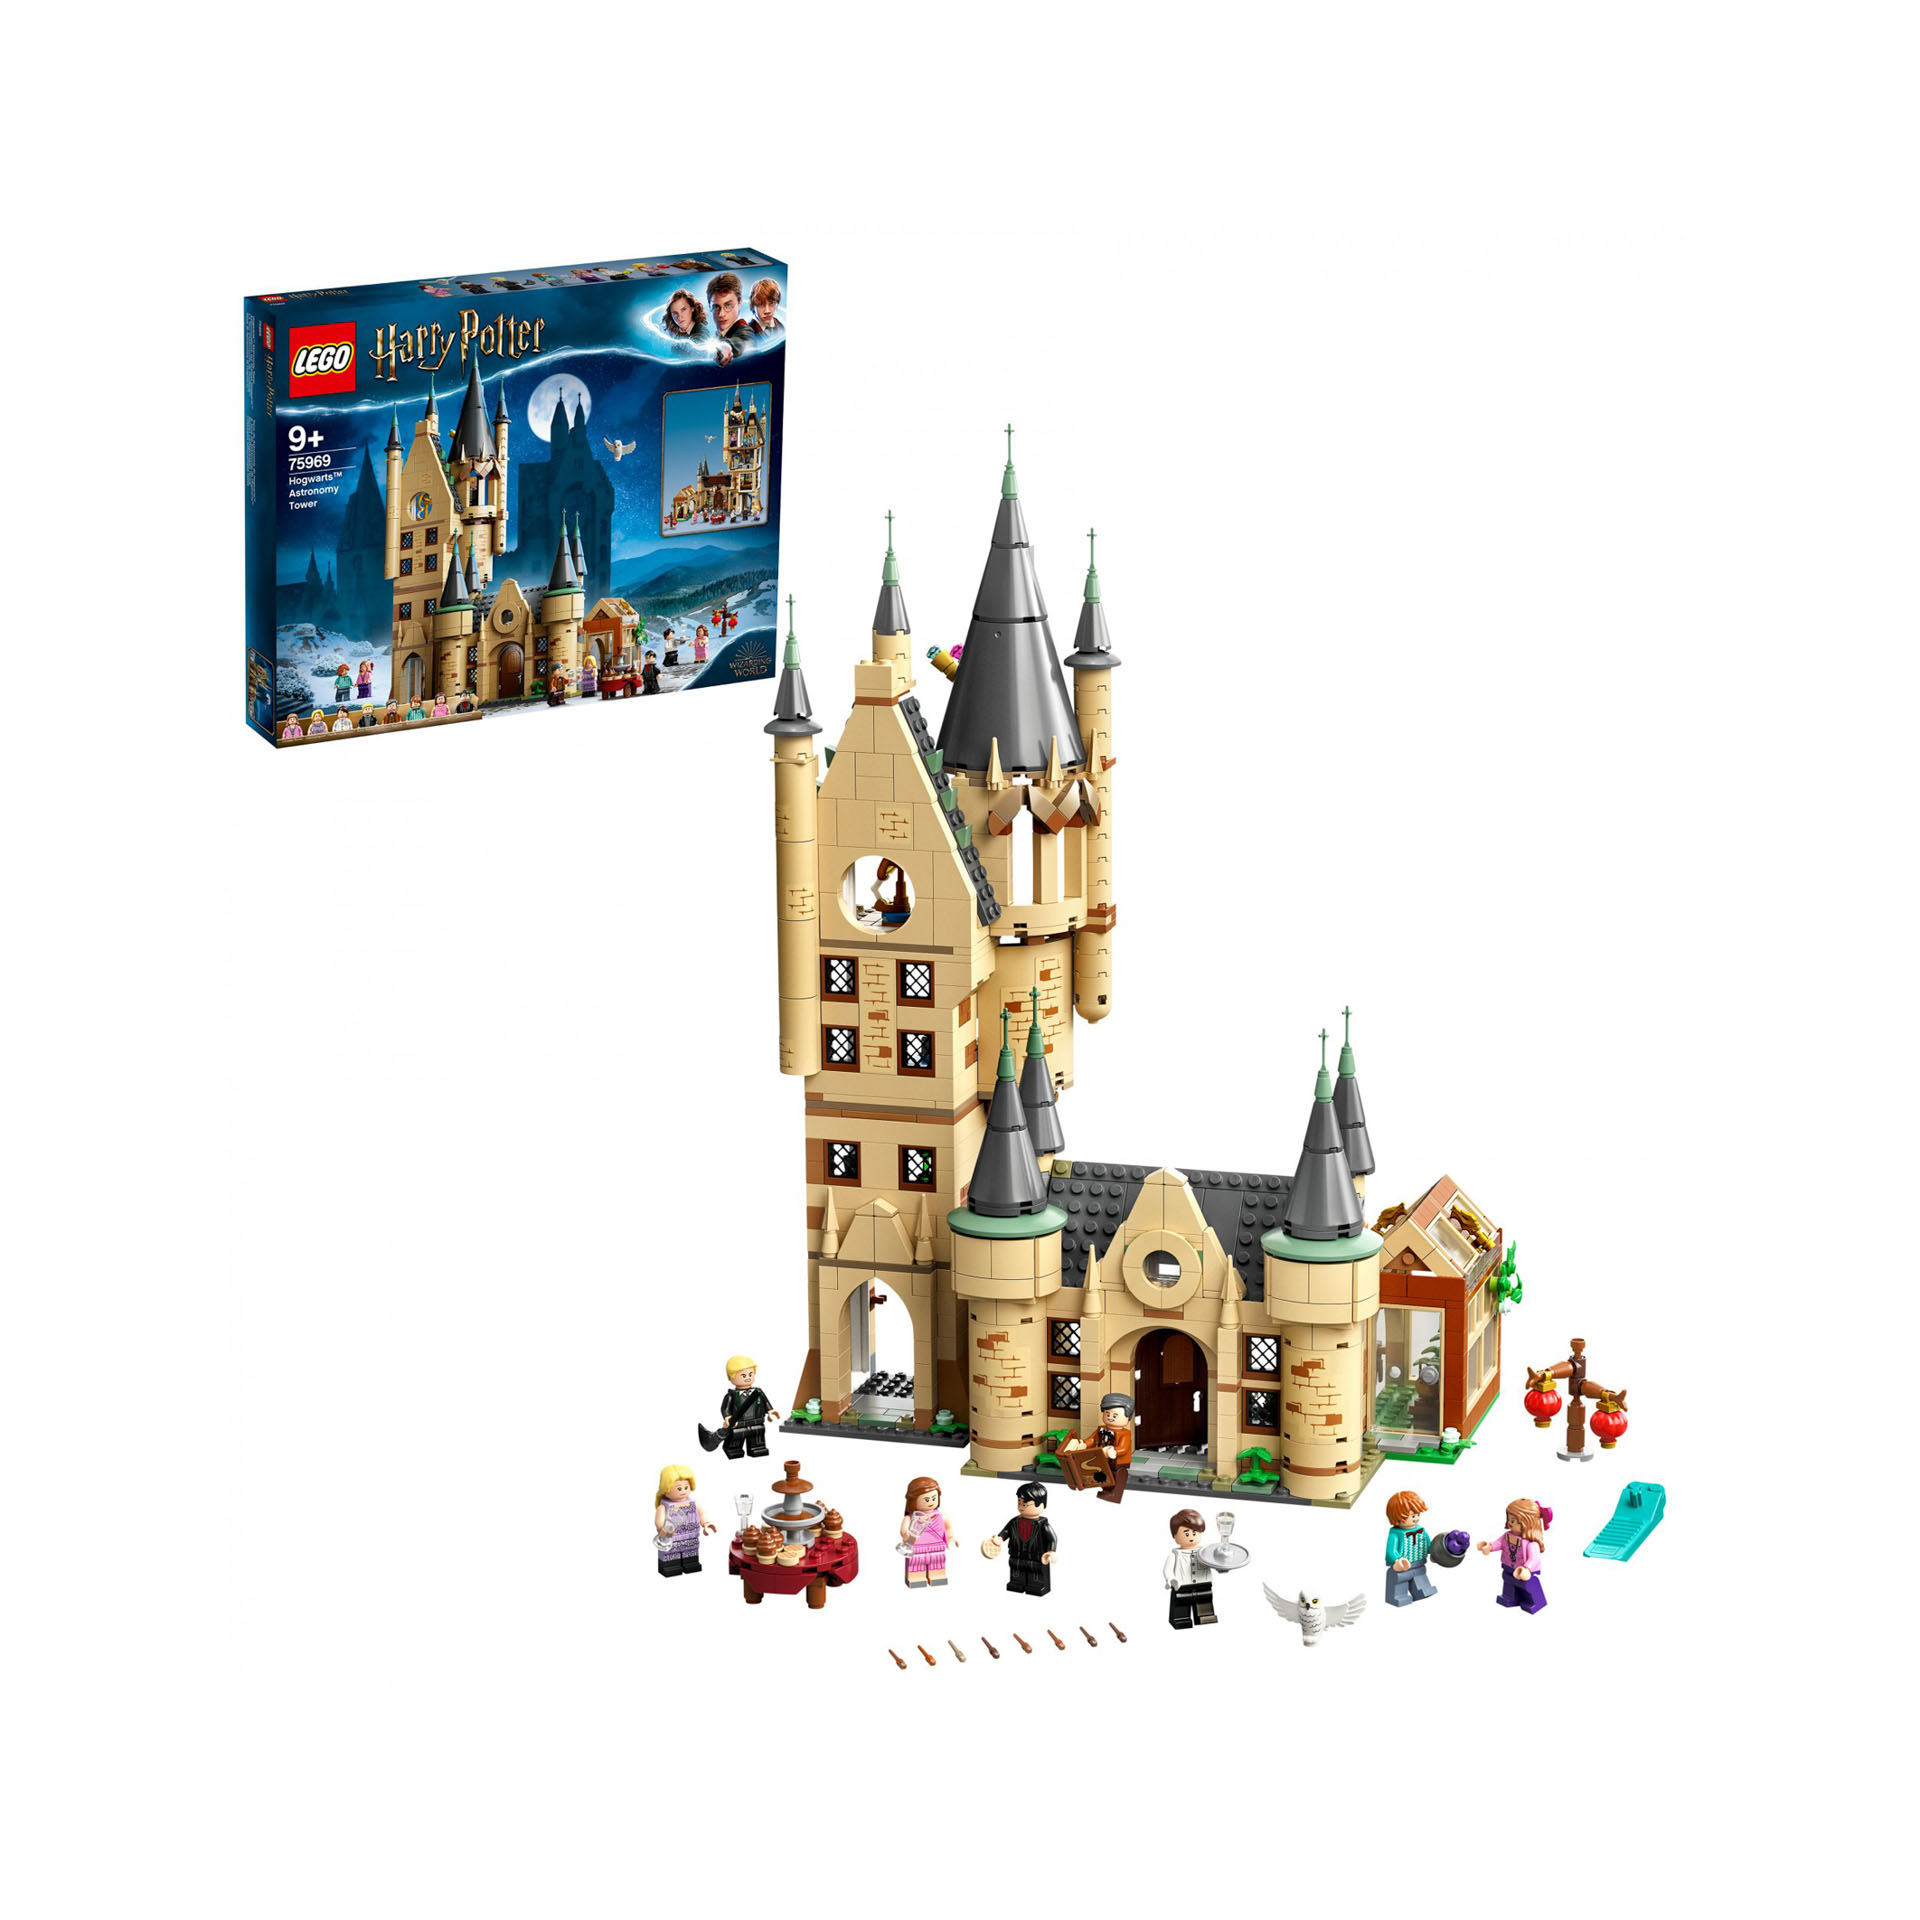 LEGO Harry Potter Torre di Astronomia di Hogwarts, Modello di Castello Giocattol 75969, , large